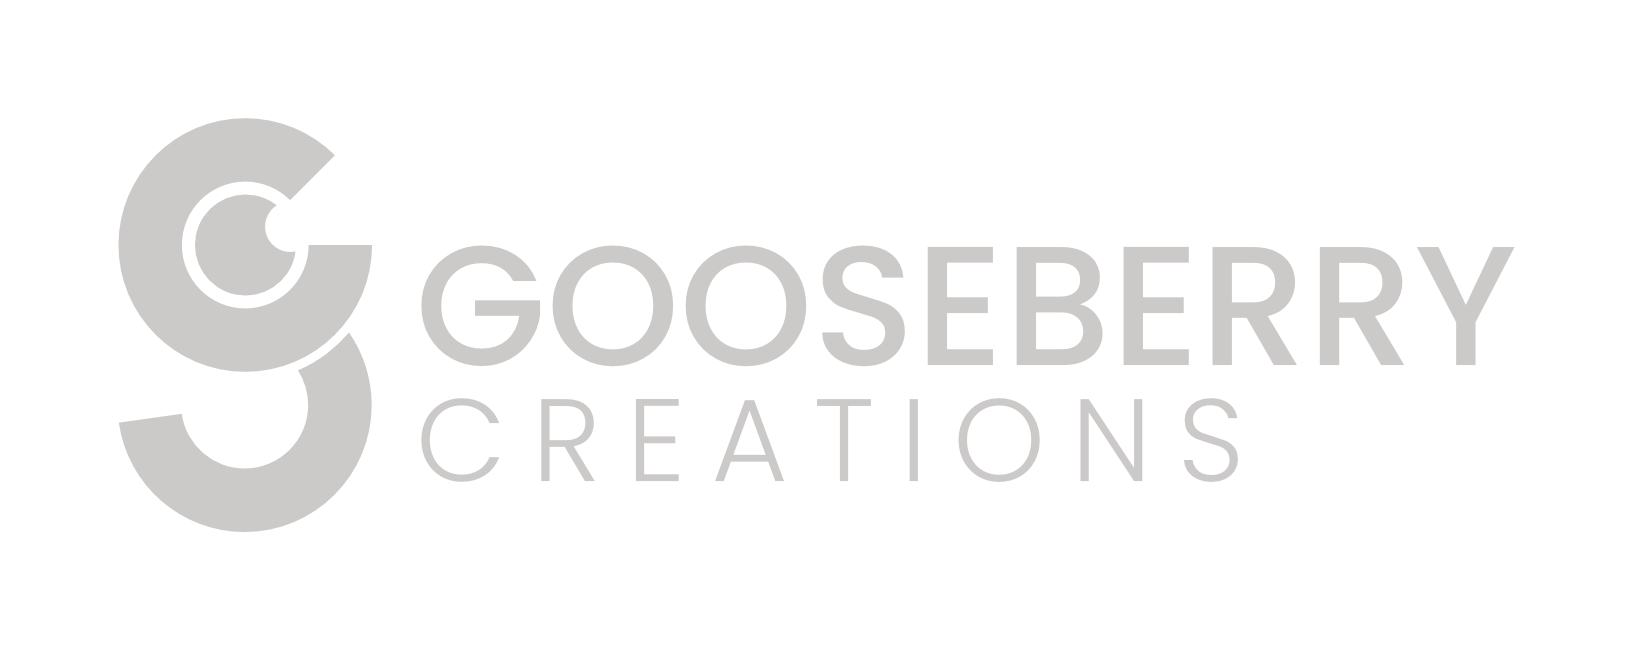 Gooseberry Creations